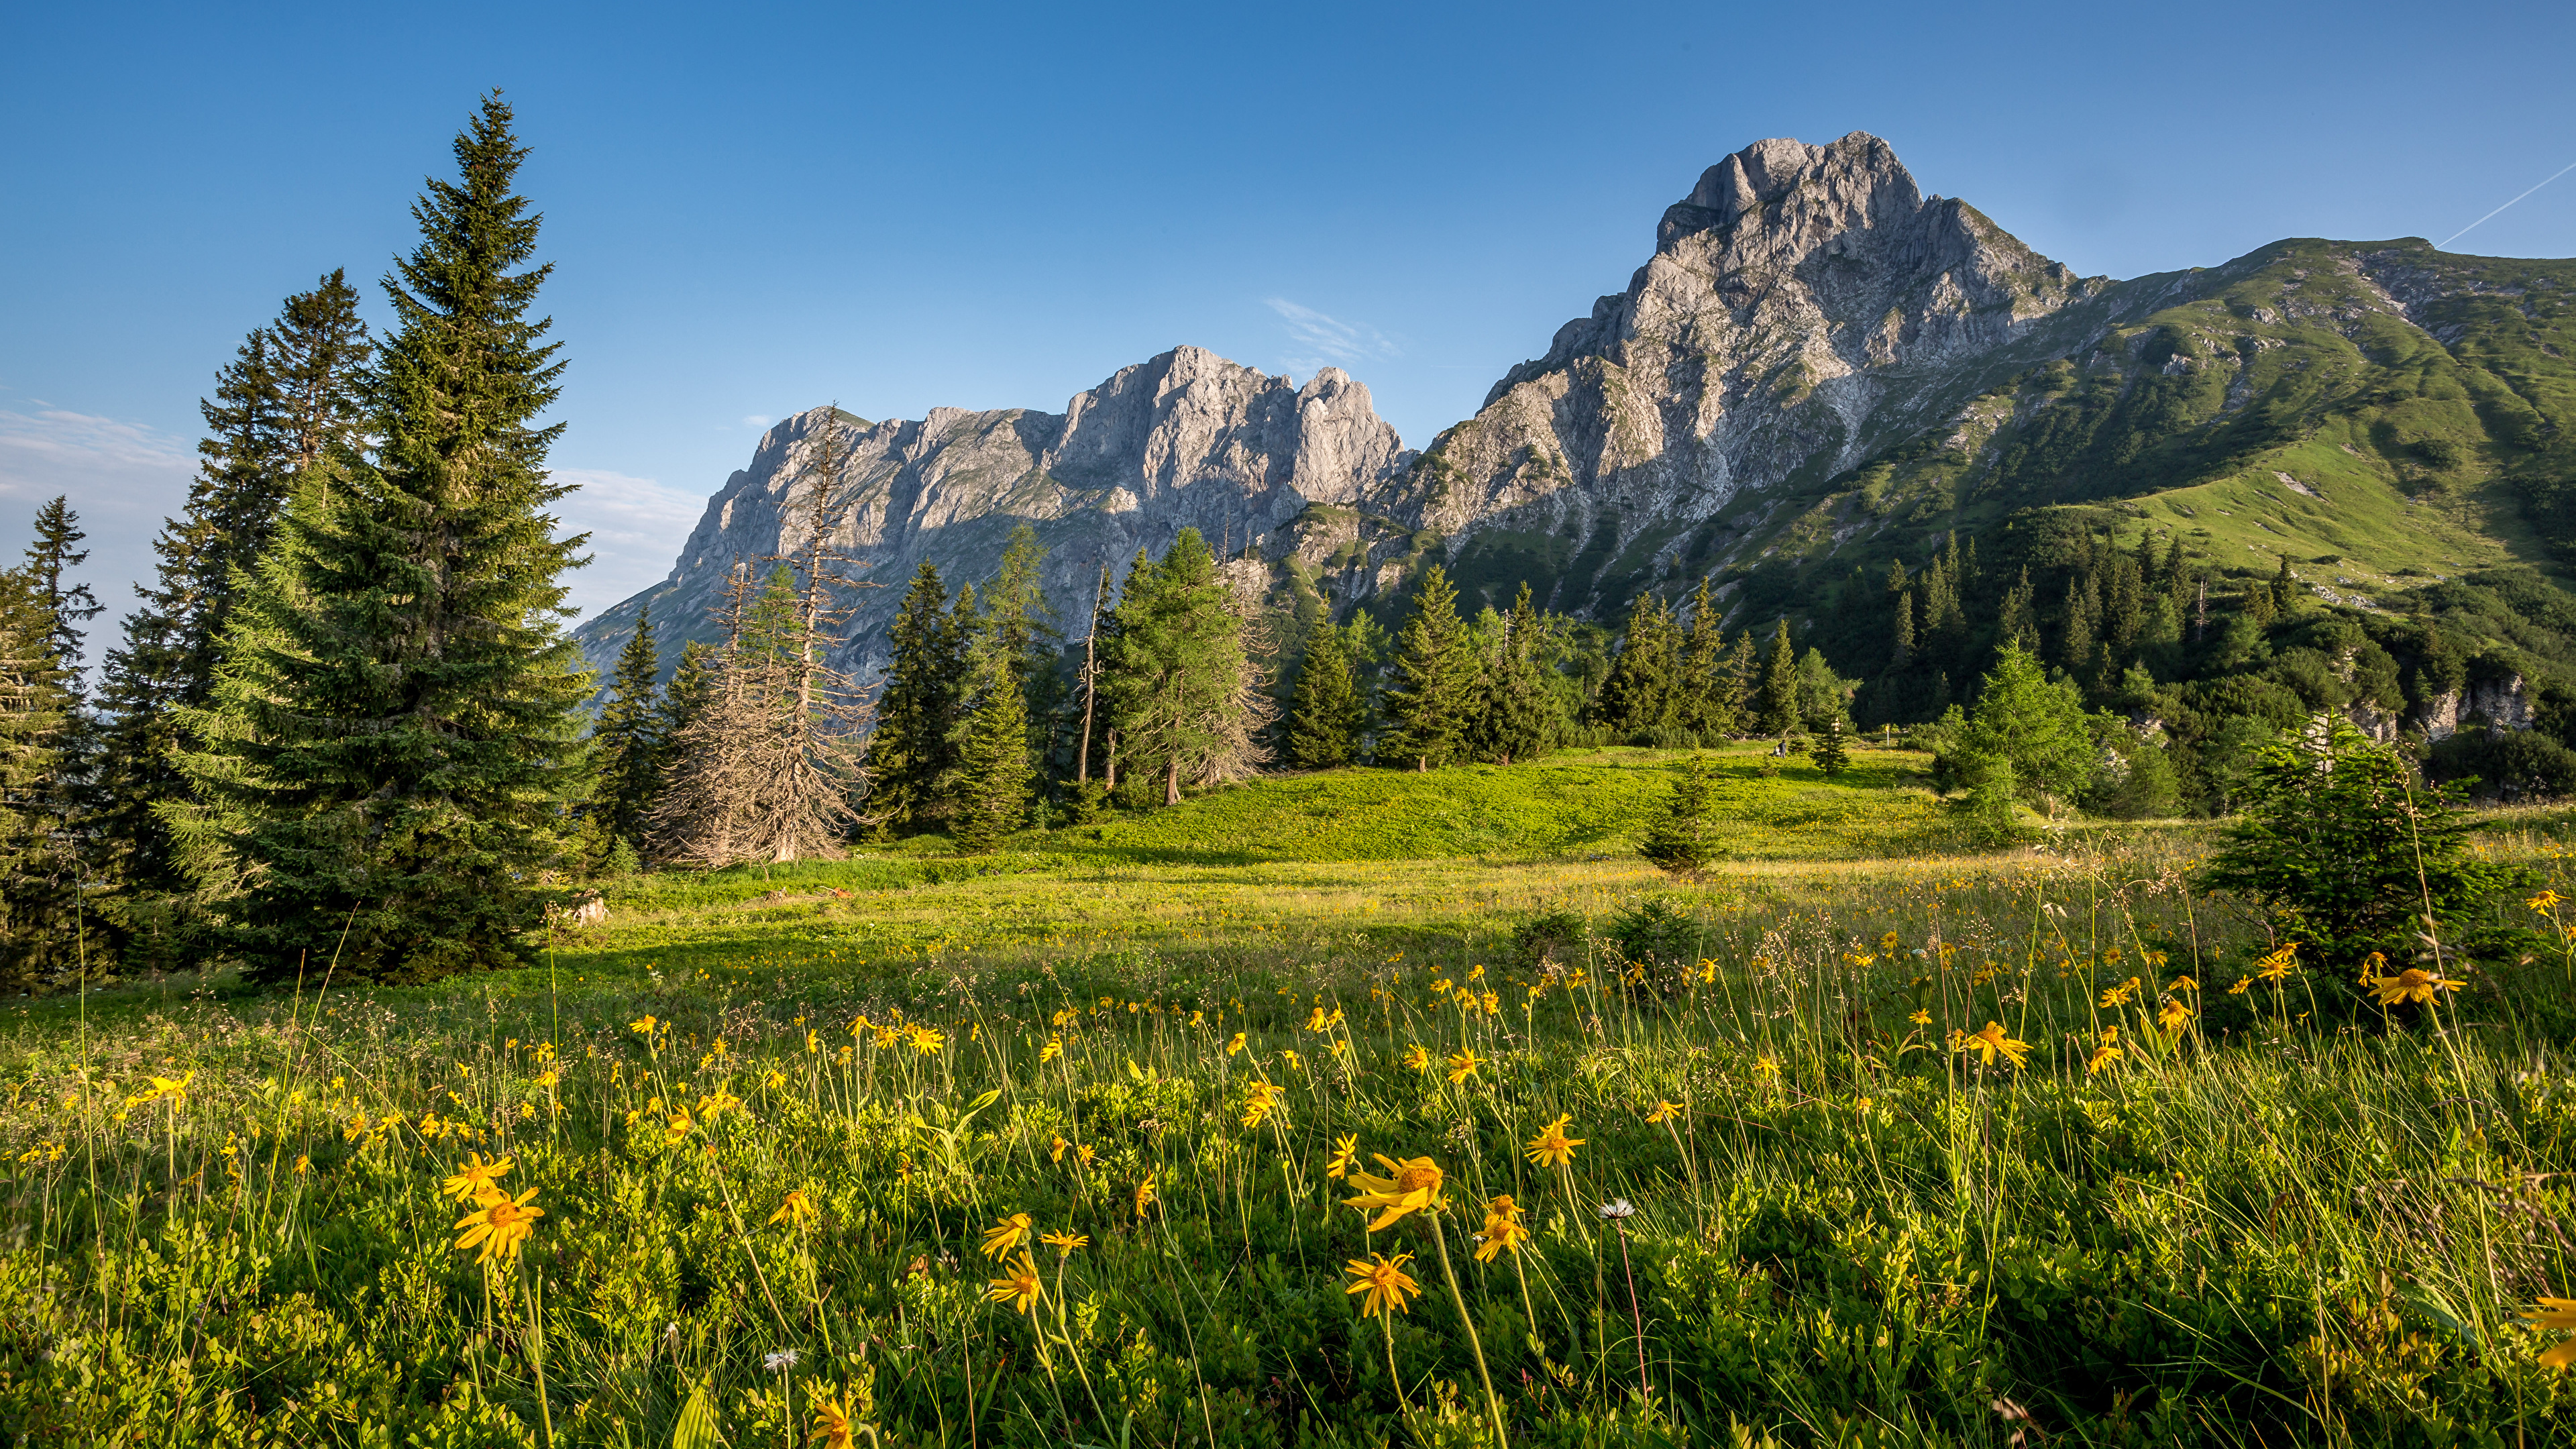 Fonds d'ecran 3840x2160 Autriche Montagnes Prairies Photographie de